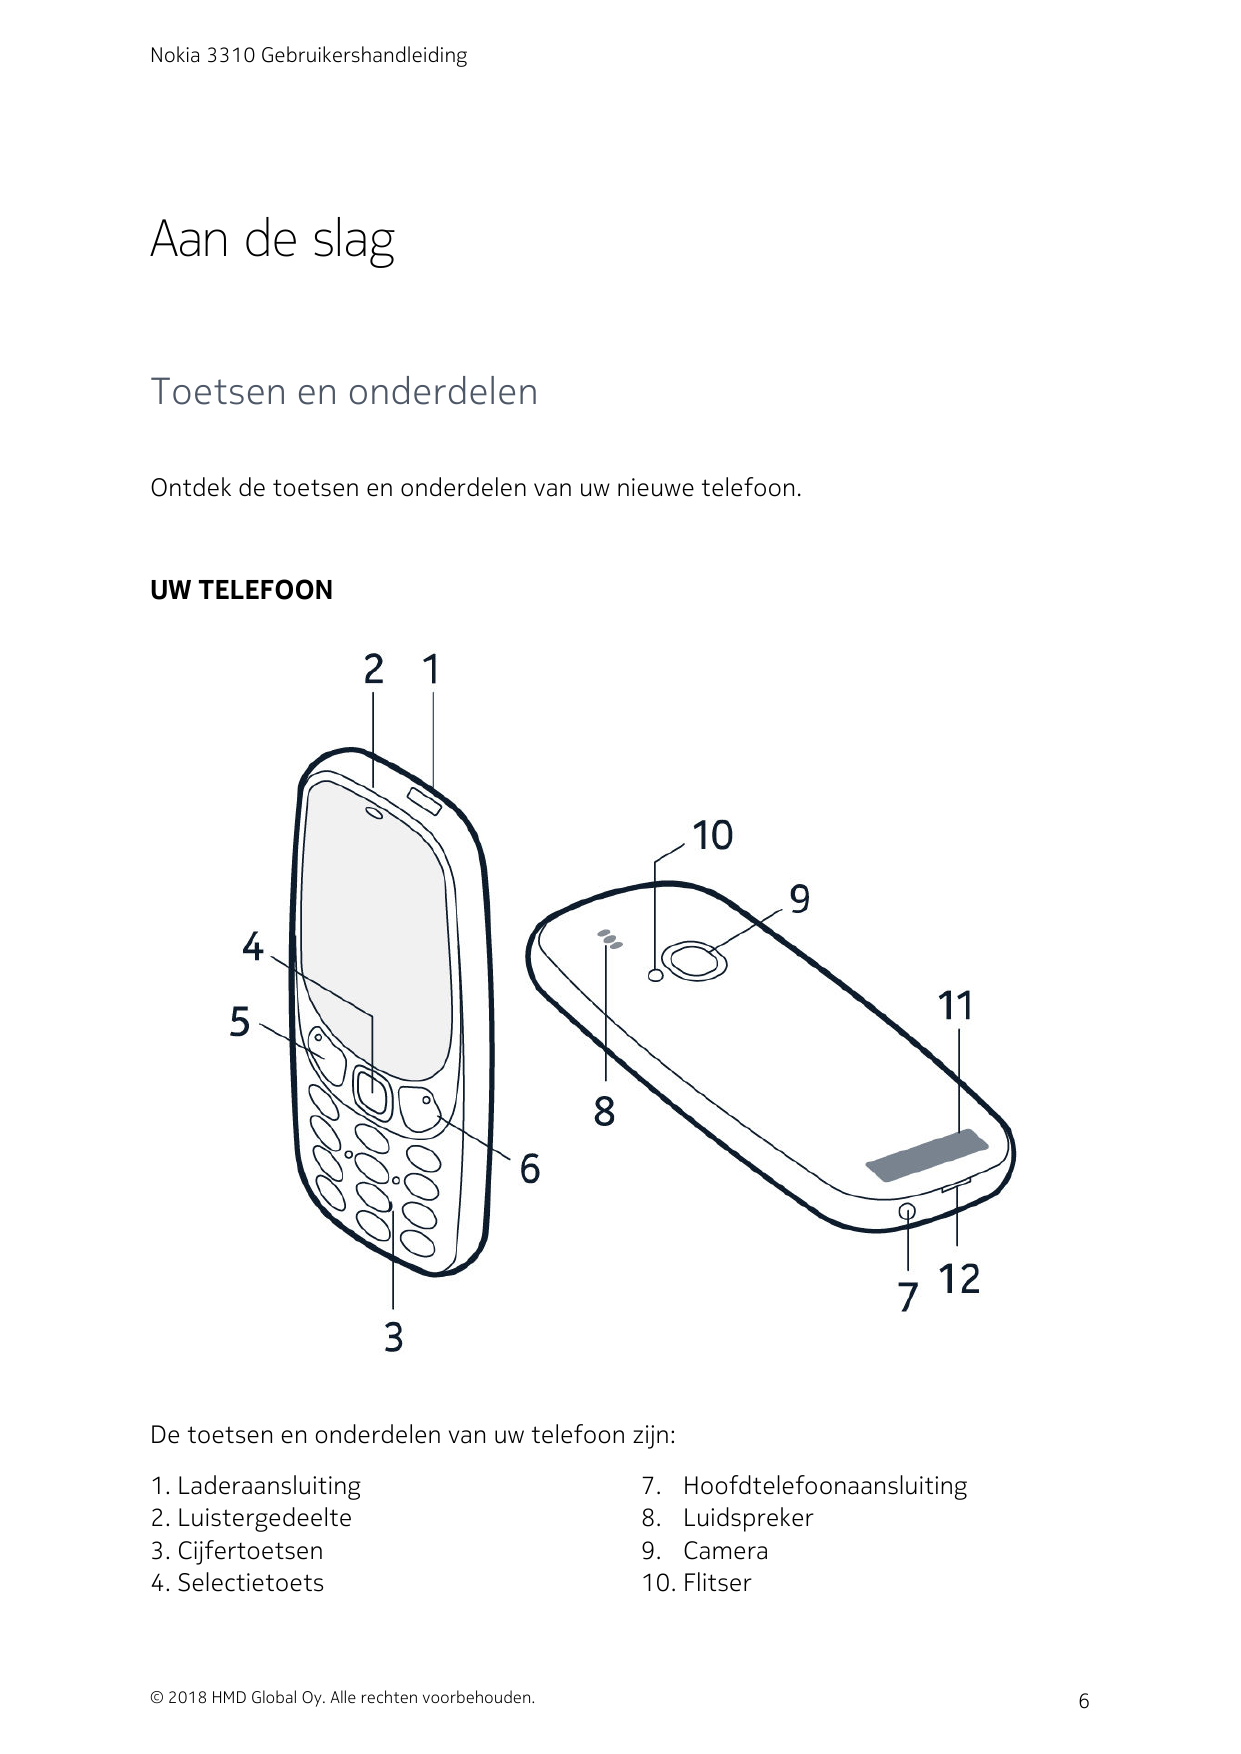 Nokia 3310 GebruikershandleidingAan de slagToetsen en onderdelenOntdek de toetsen en onderdelen van uw nieuwe telefoon.UW TELEFO